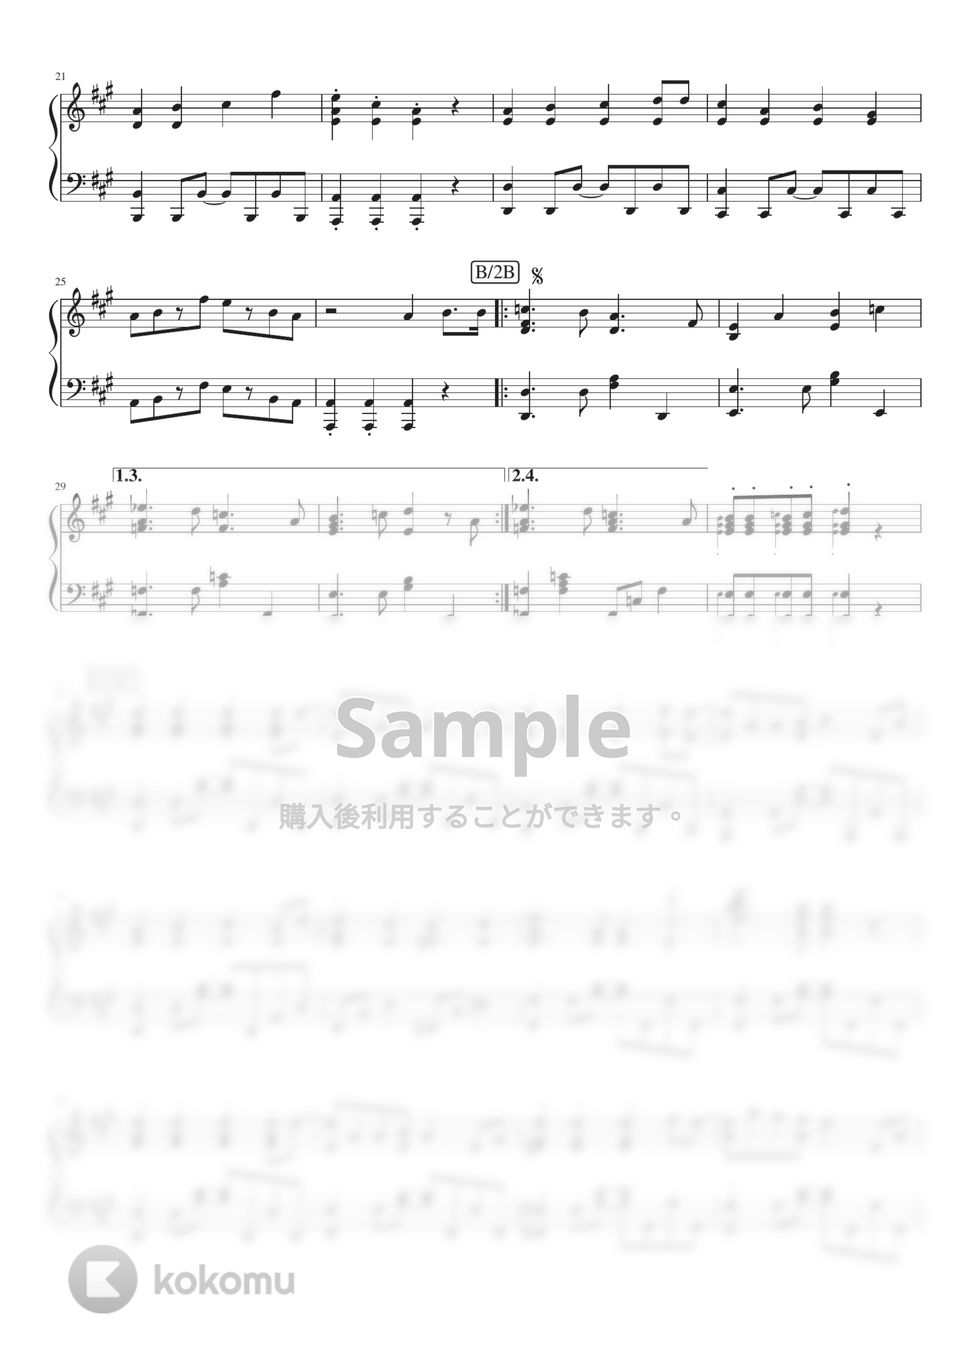 ナユタン星人 - パオパオチャンネル (Piano Solo) by 深根 / Fukane